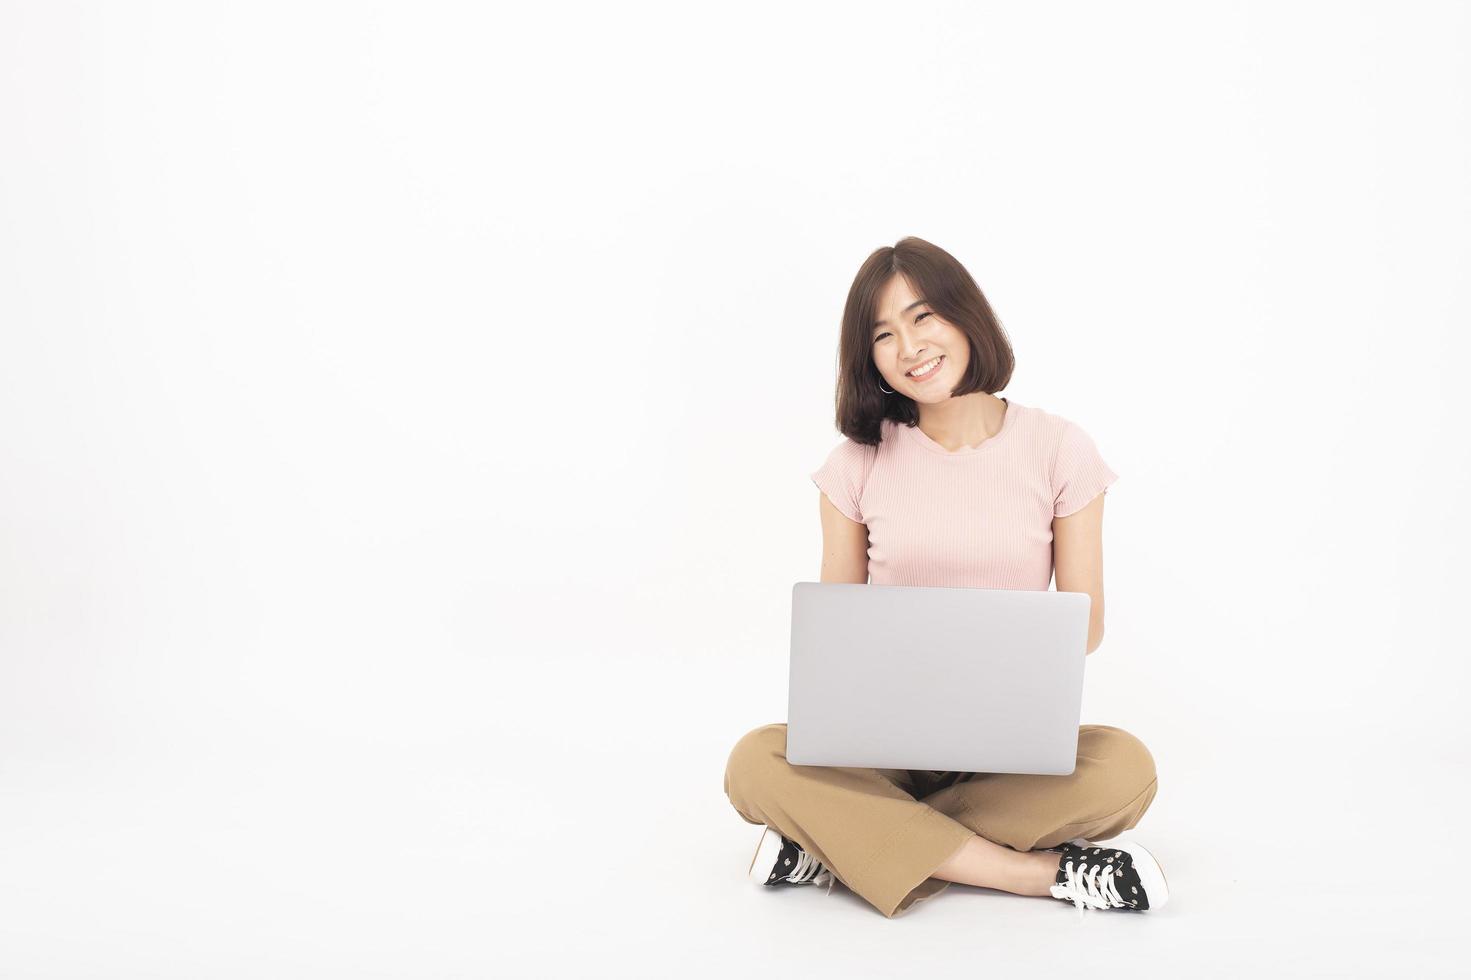 jolie femme adolescente asiatique travaille avec un ordinateur sur fond blanc photo